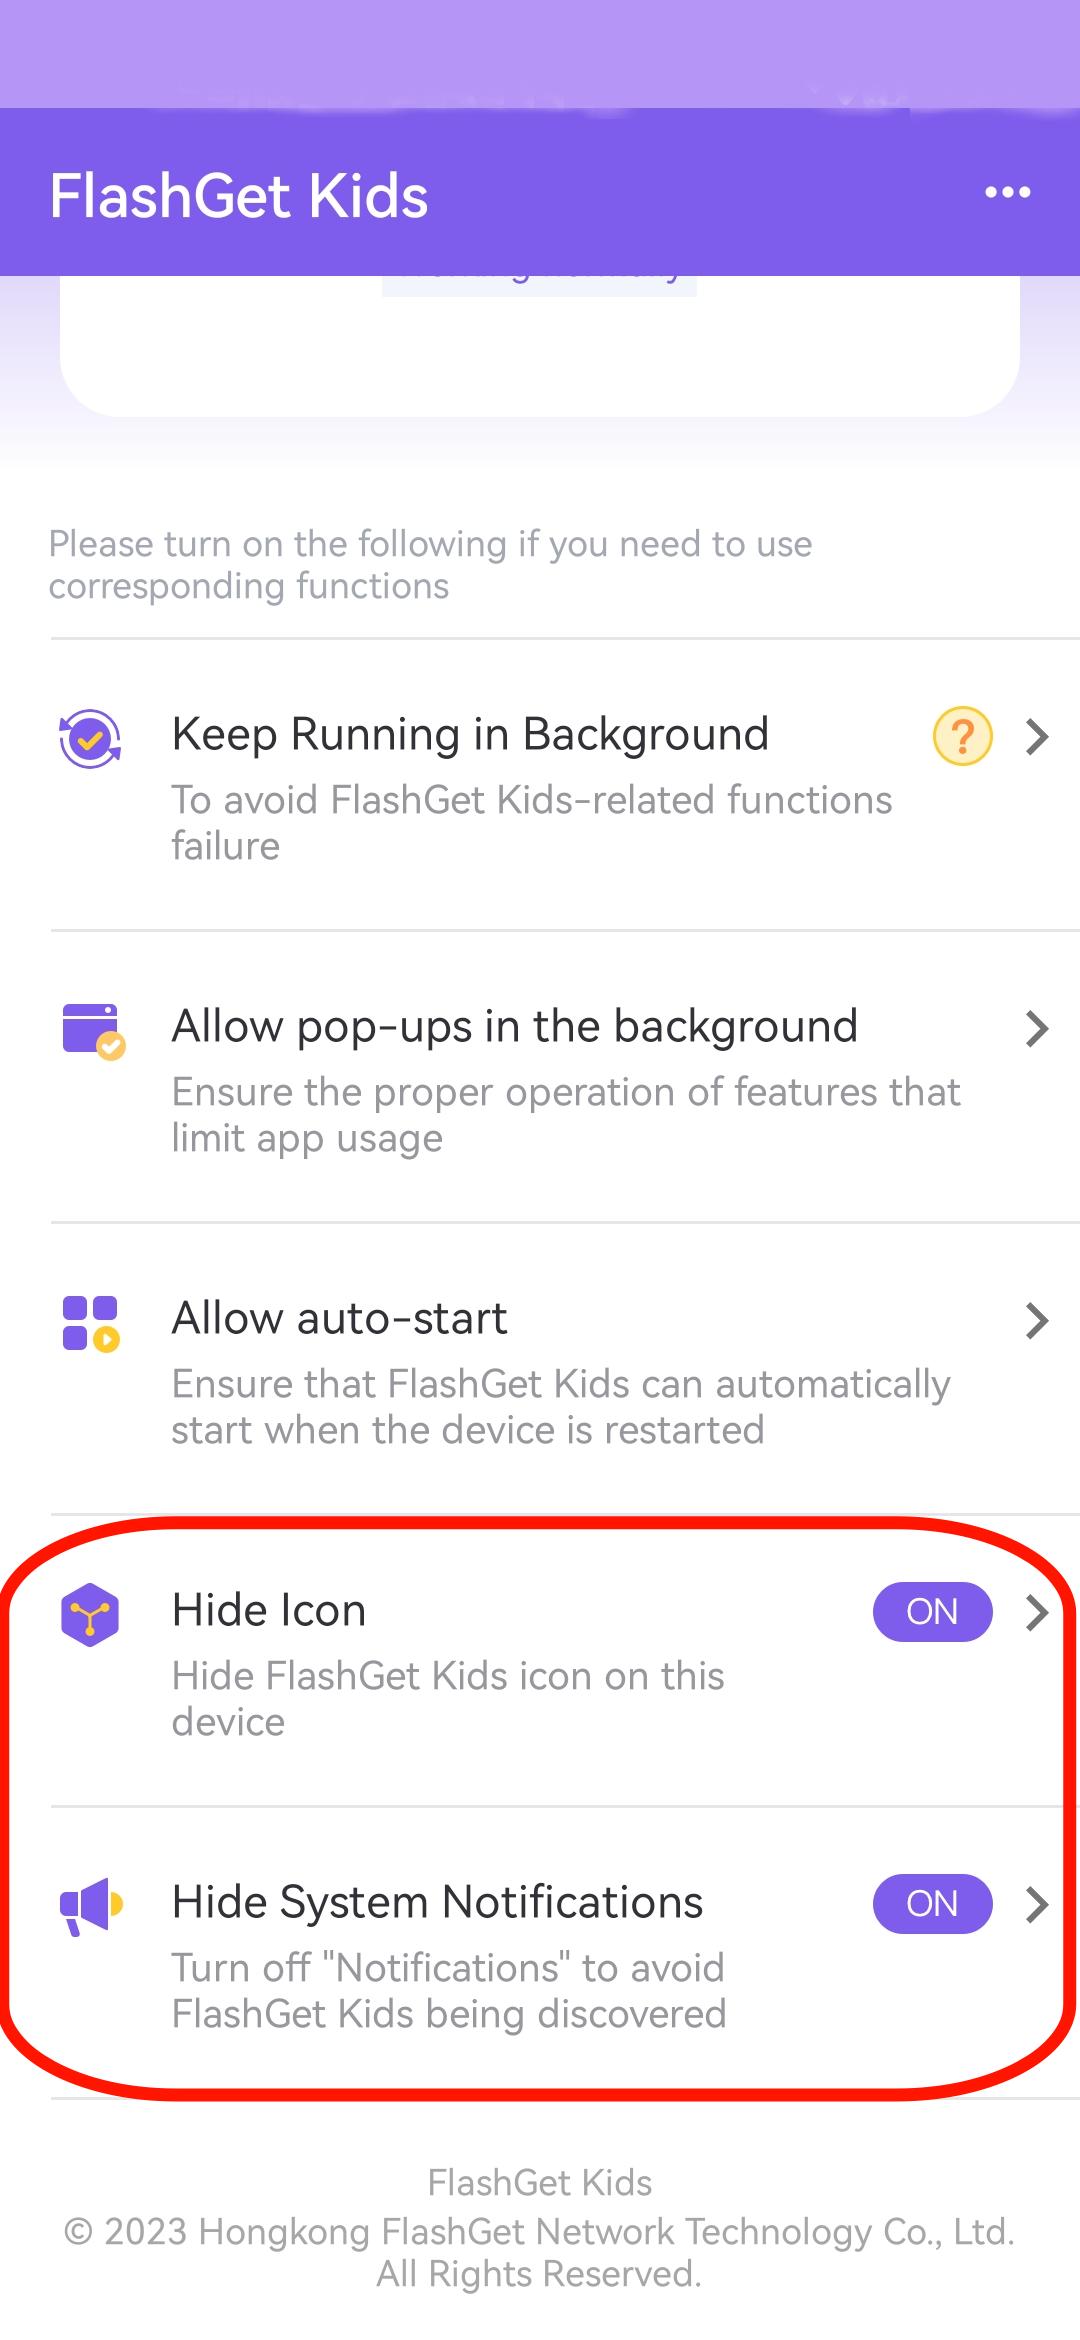 Ocultar icono y ocultar notificación del sistema en FlashGet Kids